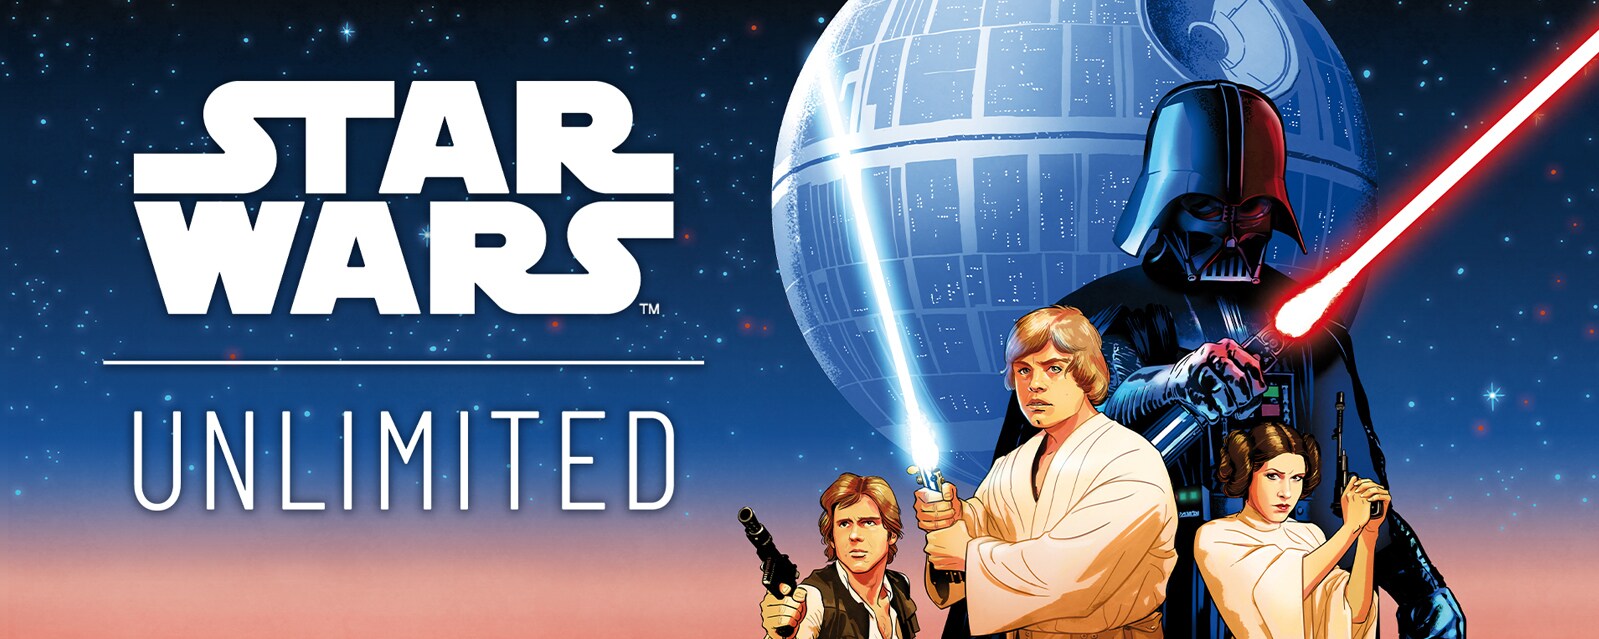 Star Wars: Unlimited key art